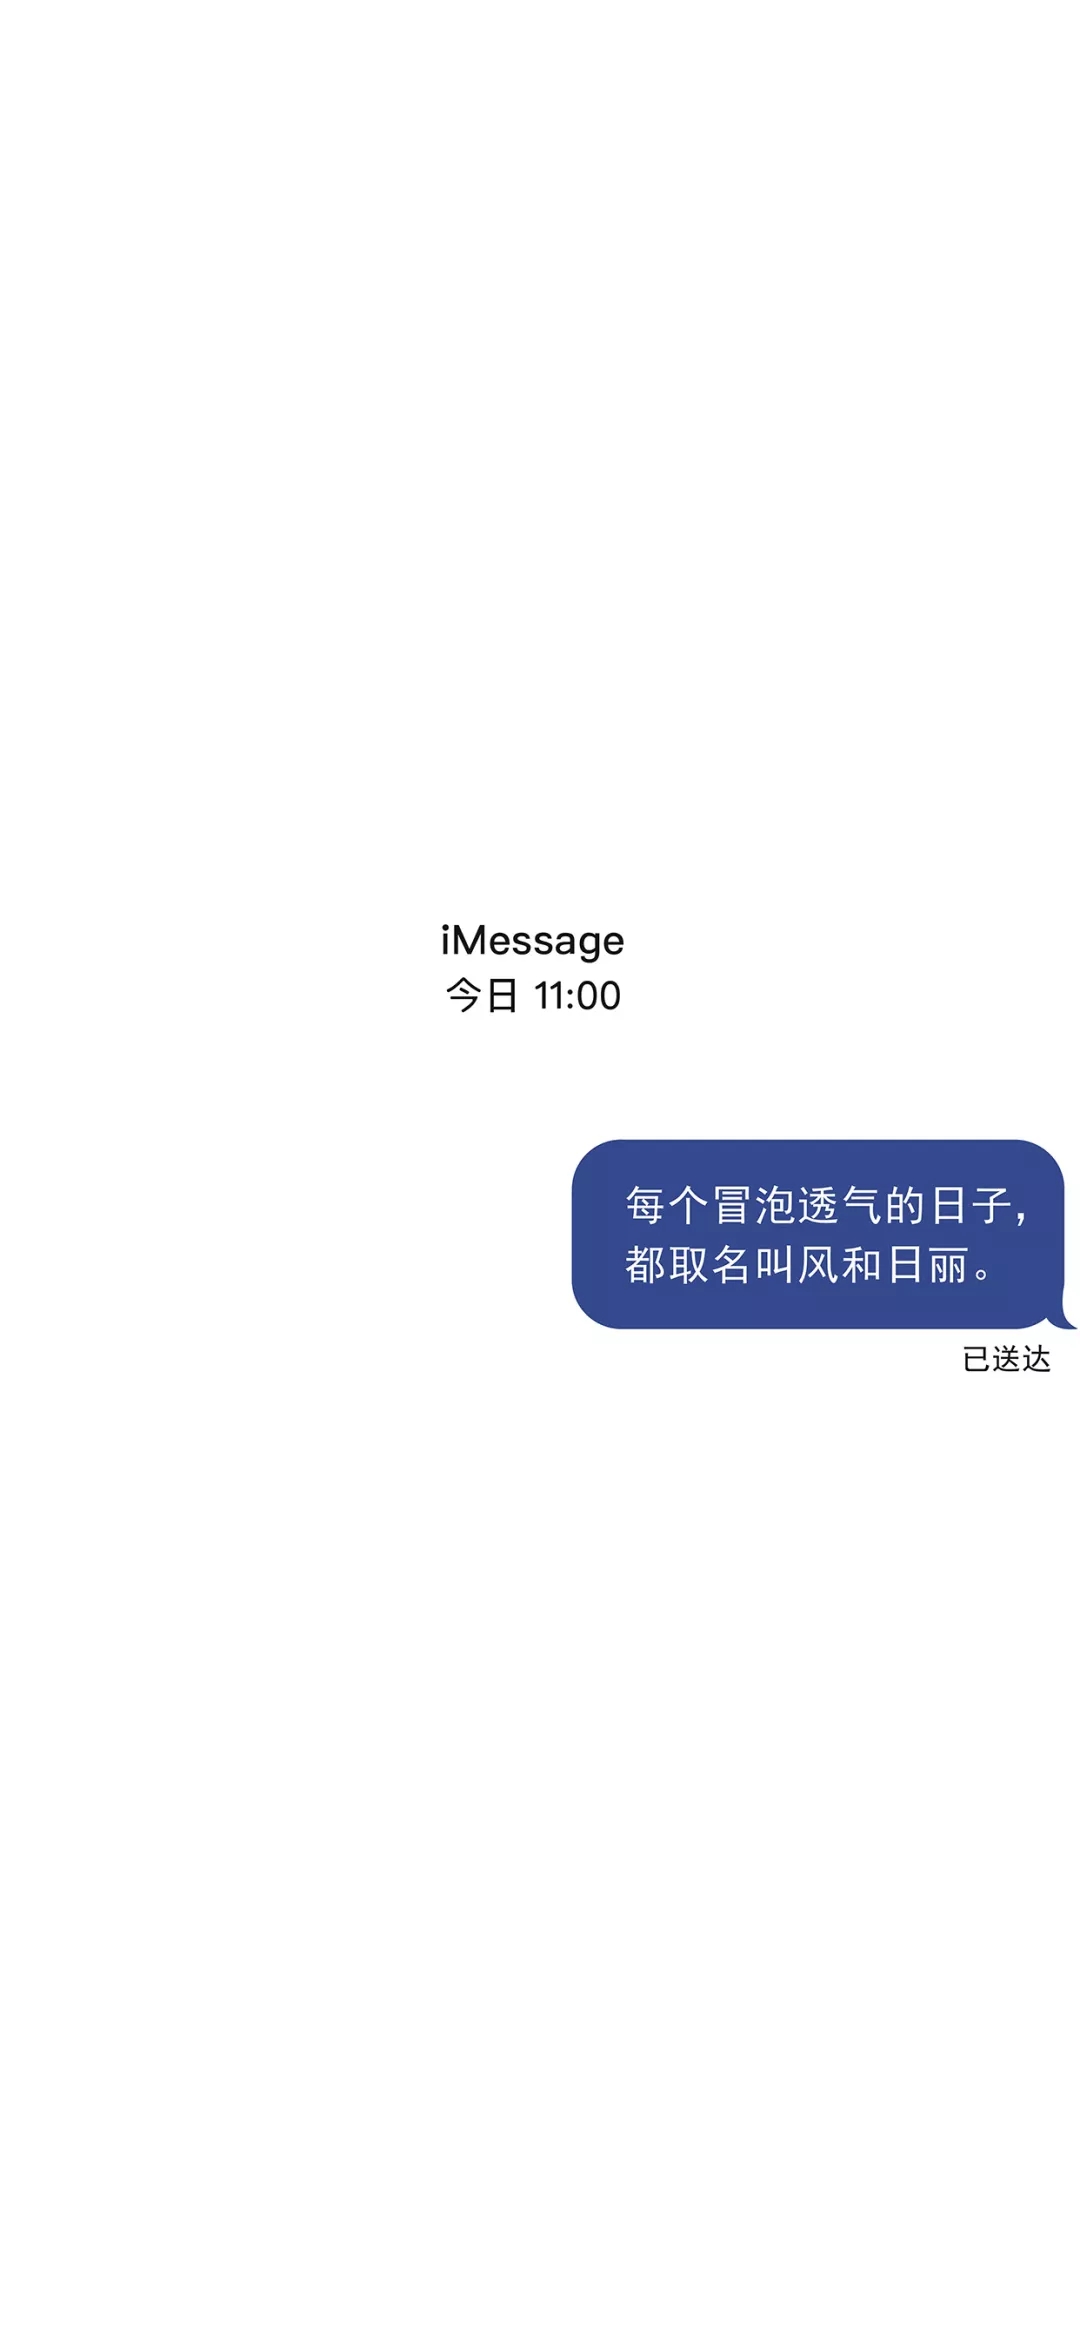 抖音最近超火文字短信壁纸,iMessage短信文字手机壁纸